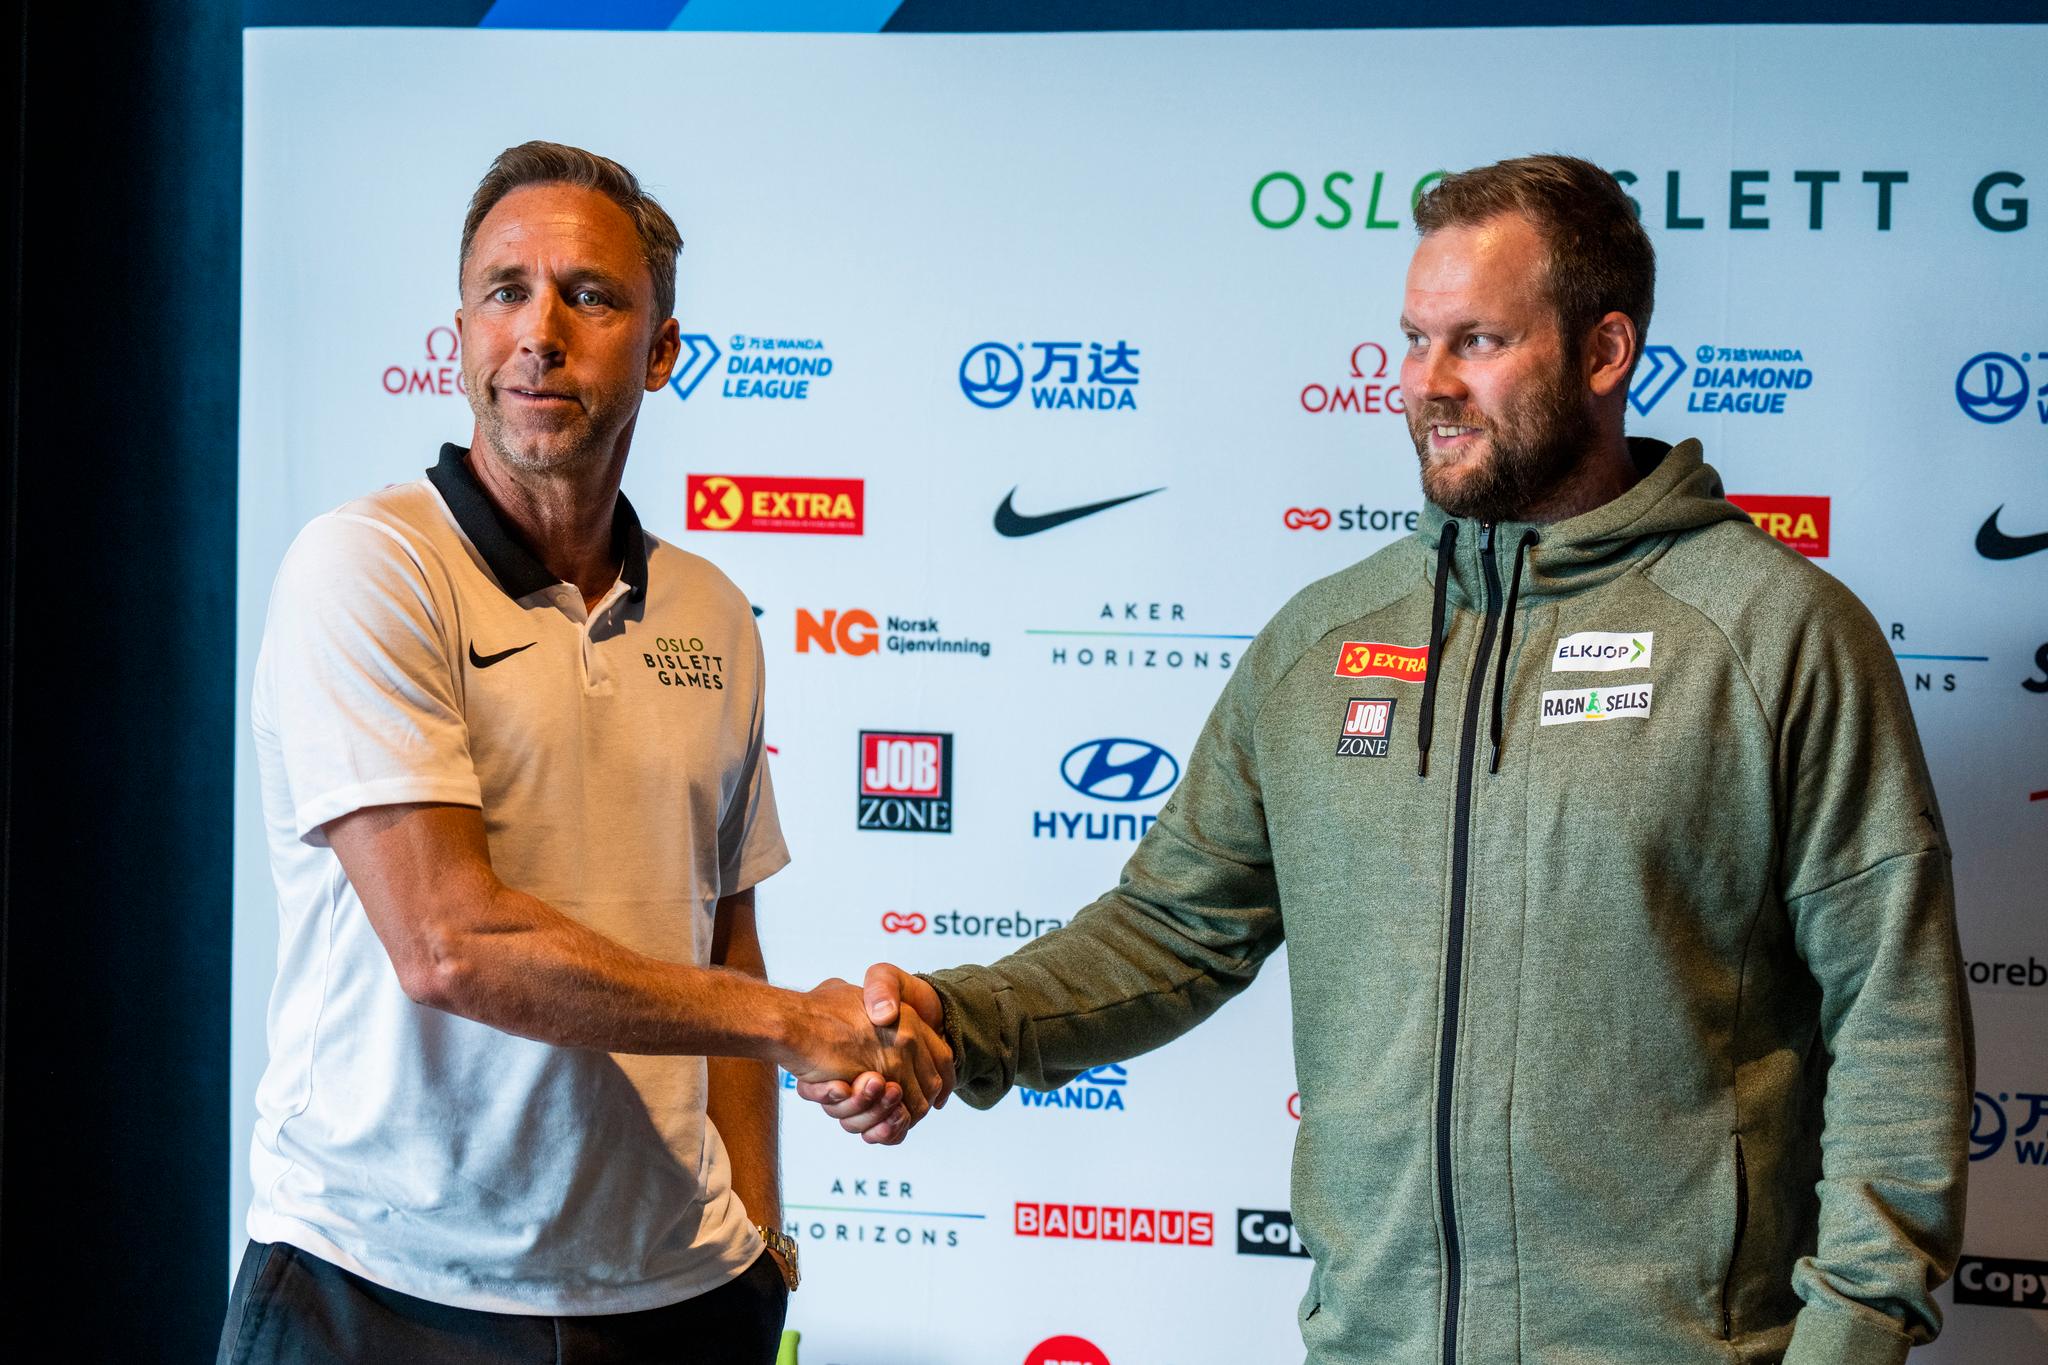 VELKOMMEN: Steinar Hoen og Eivind Henriksen foran Bislett Games.